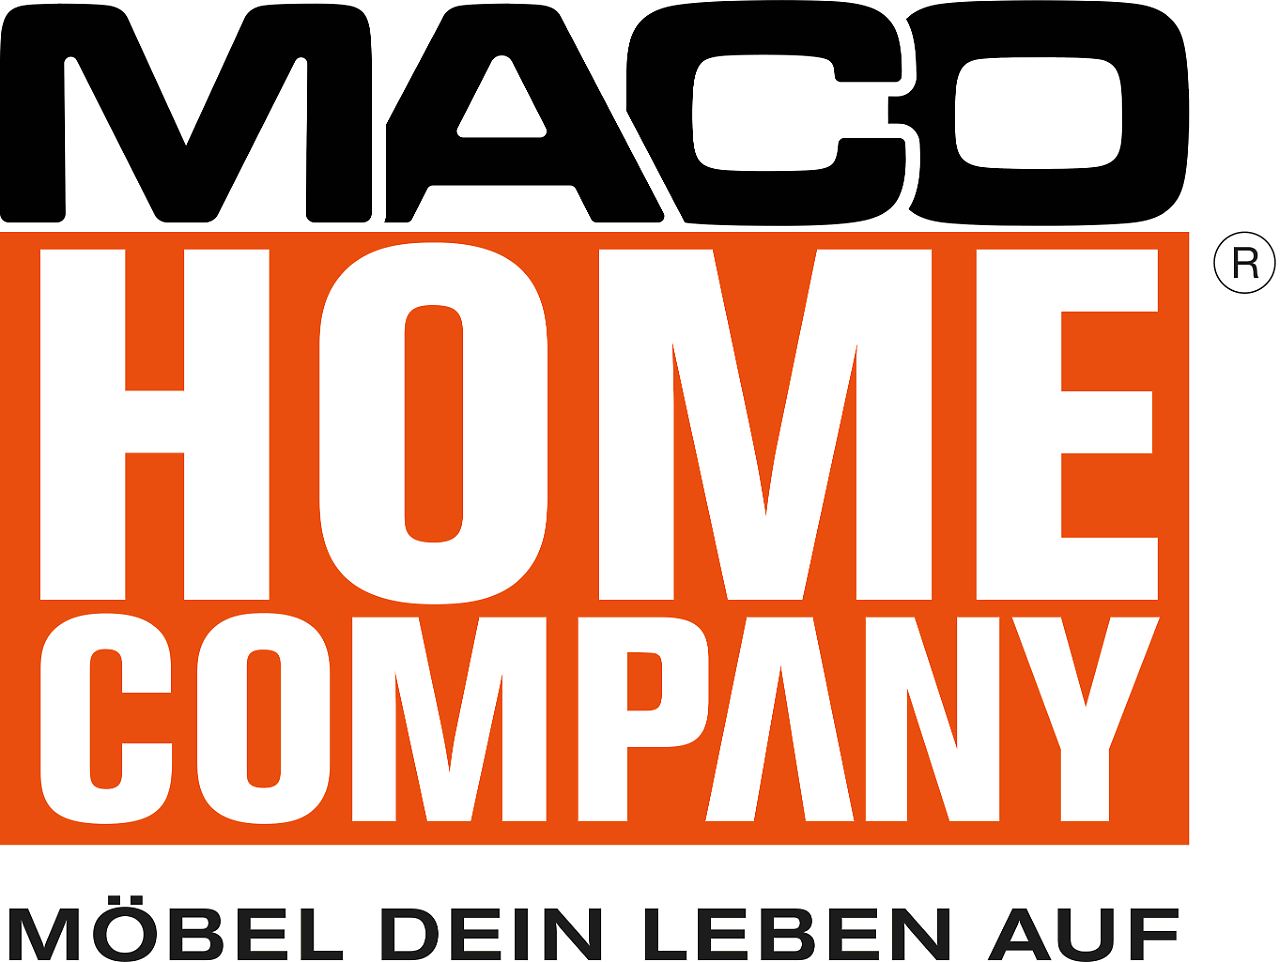 MACO-HC-Kompakt-schwarz-orange.jpg